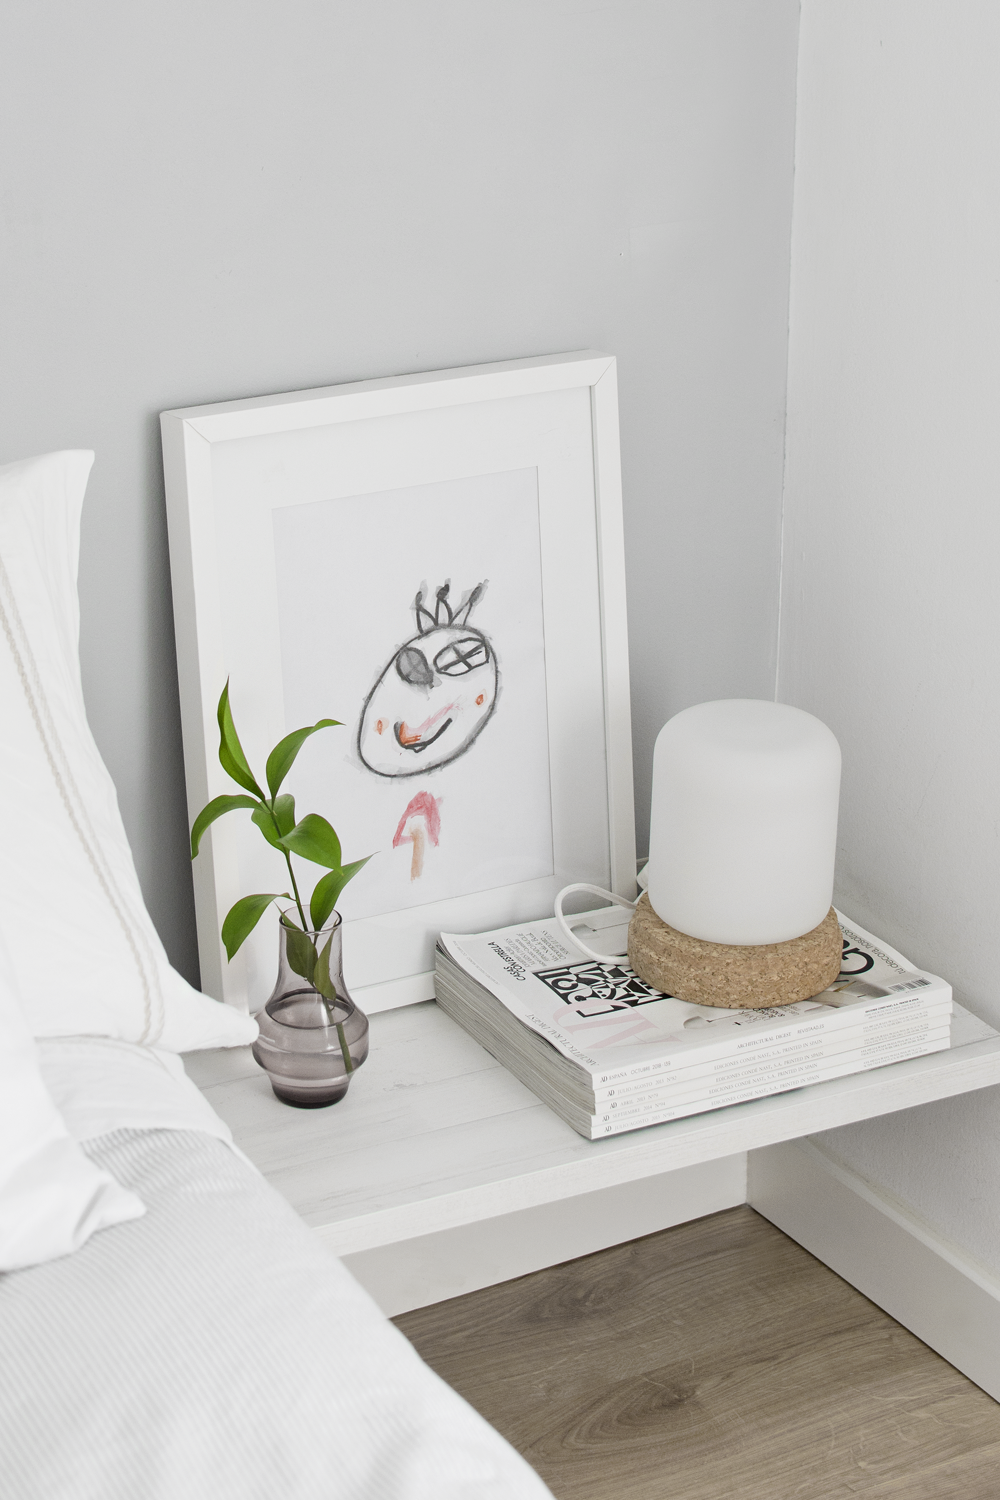 DIY - Minimalist bedside table for a Nordic style bedroom / DIY - Mesilla de noche minimalista en dormitorio estilo nórdico